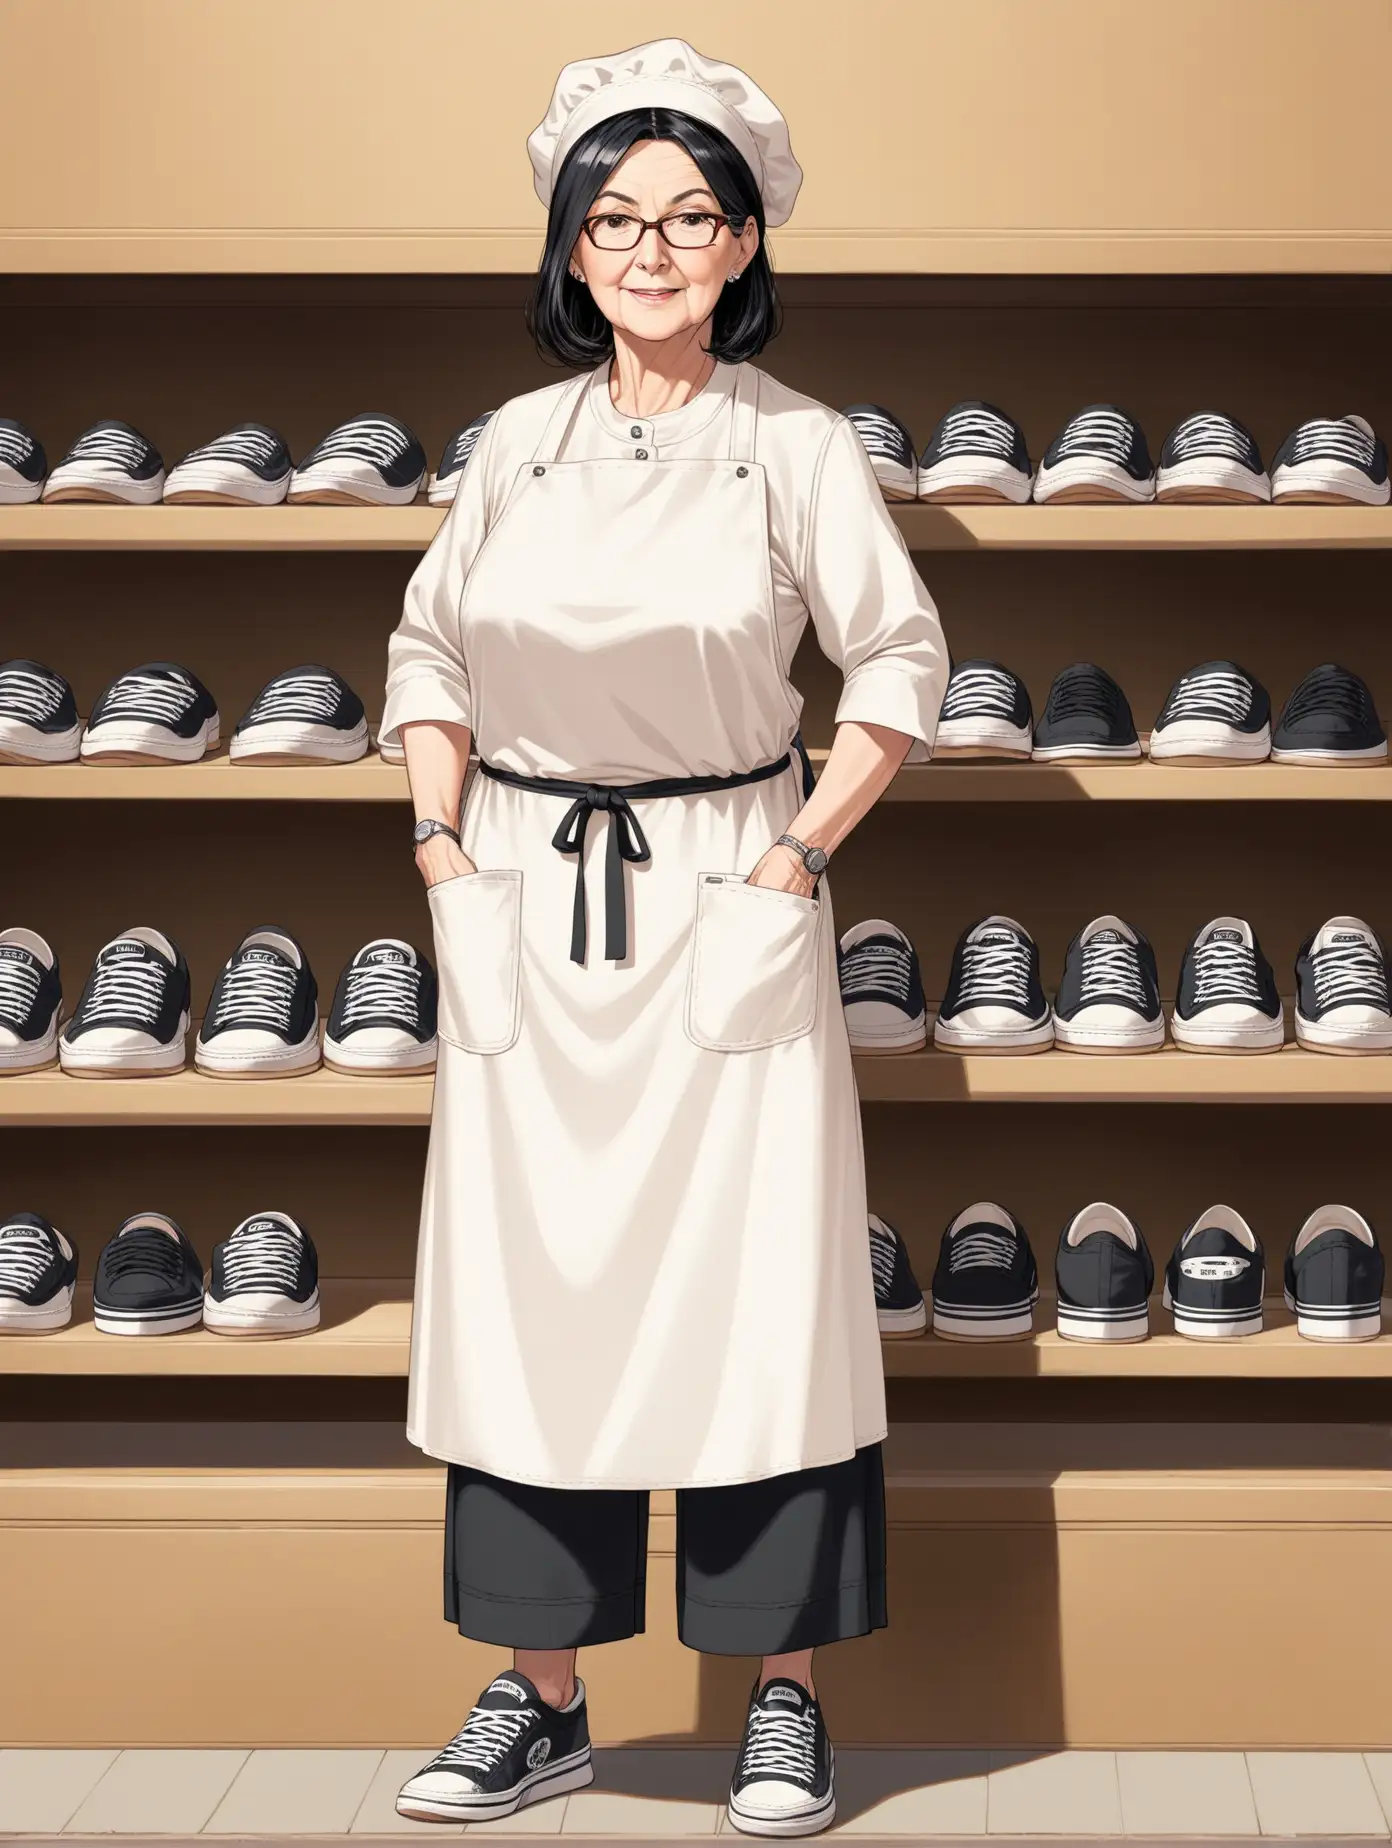 взрослая женщина лет 45, одежда пекаря, кроссовки, стоит, черные волосы